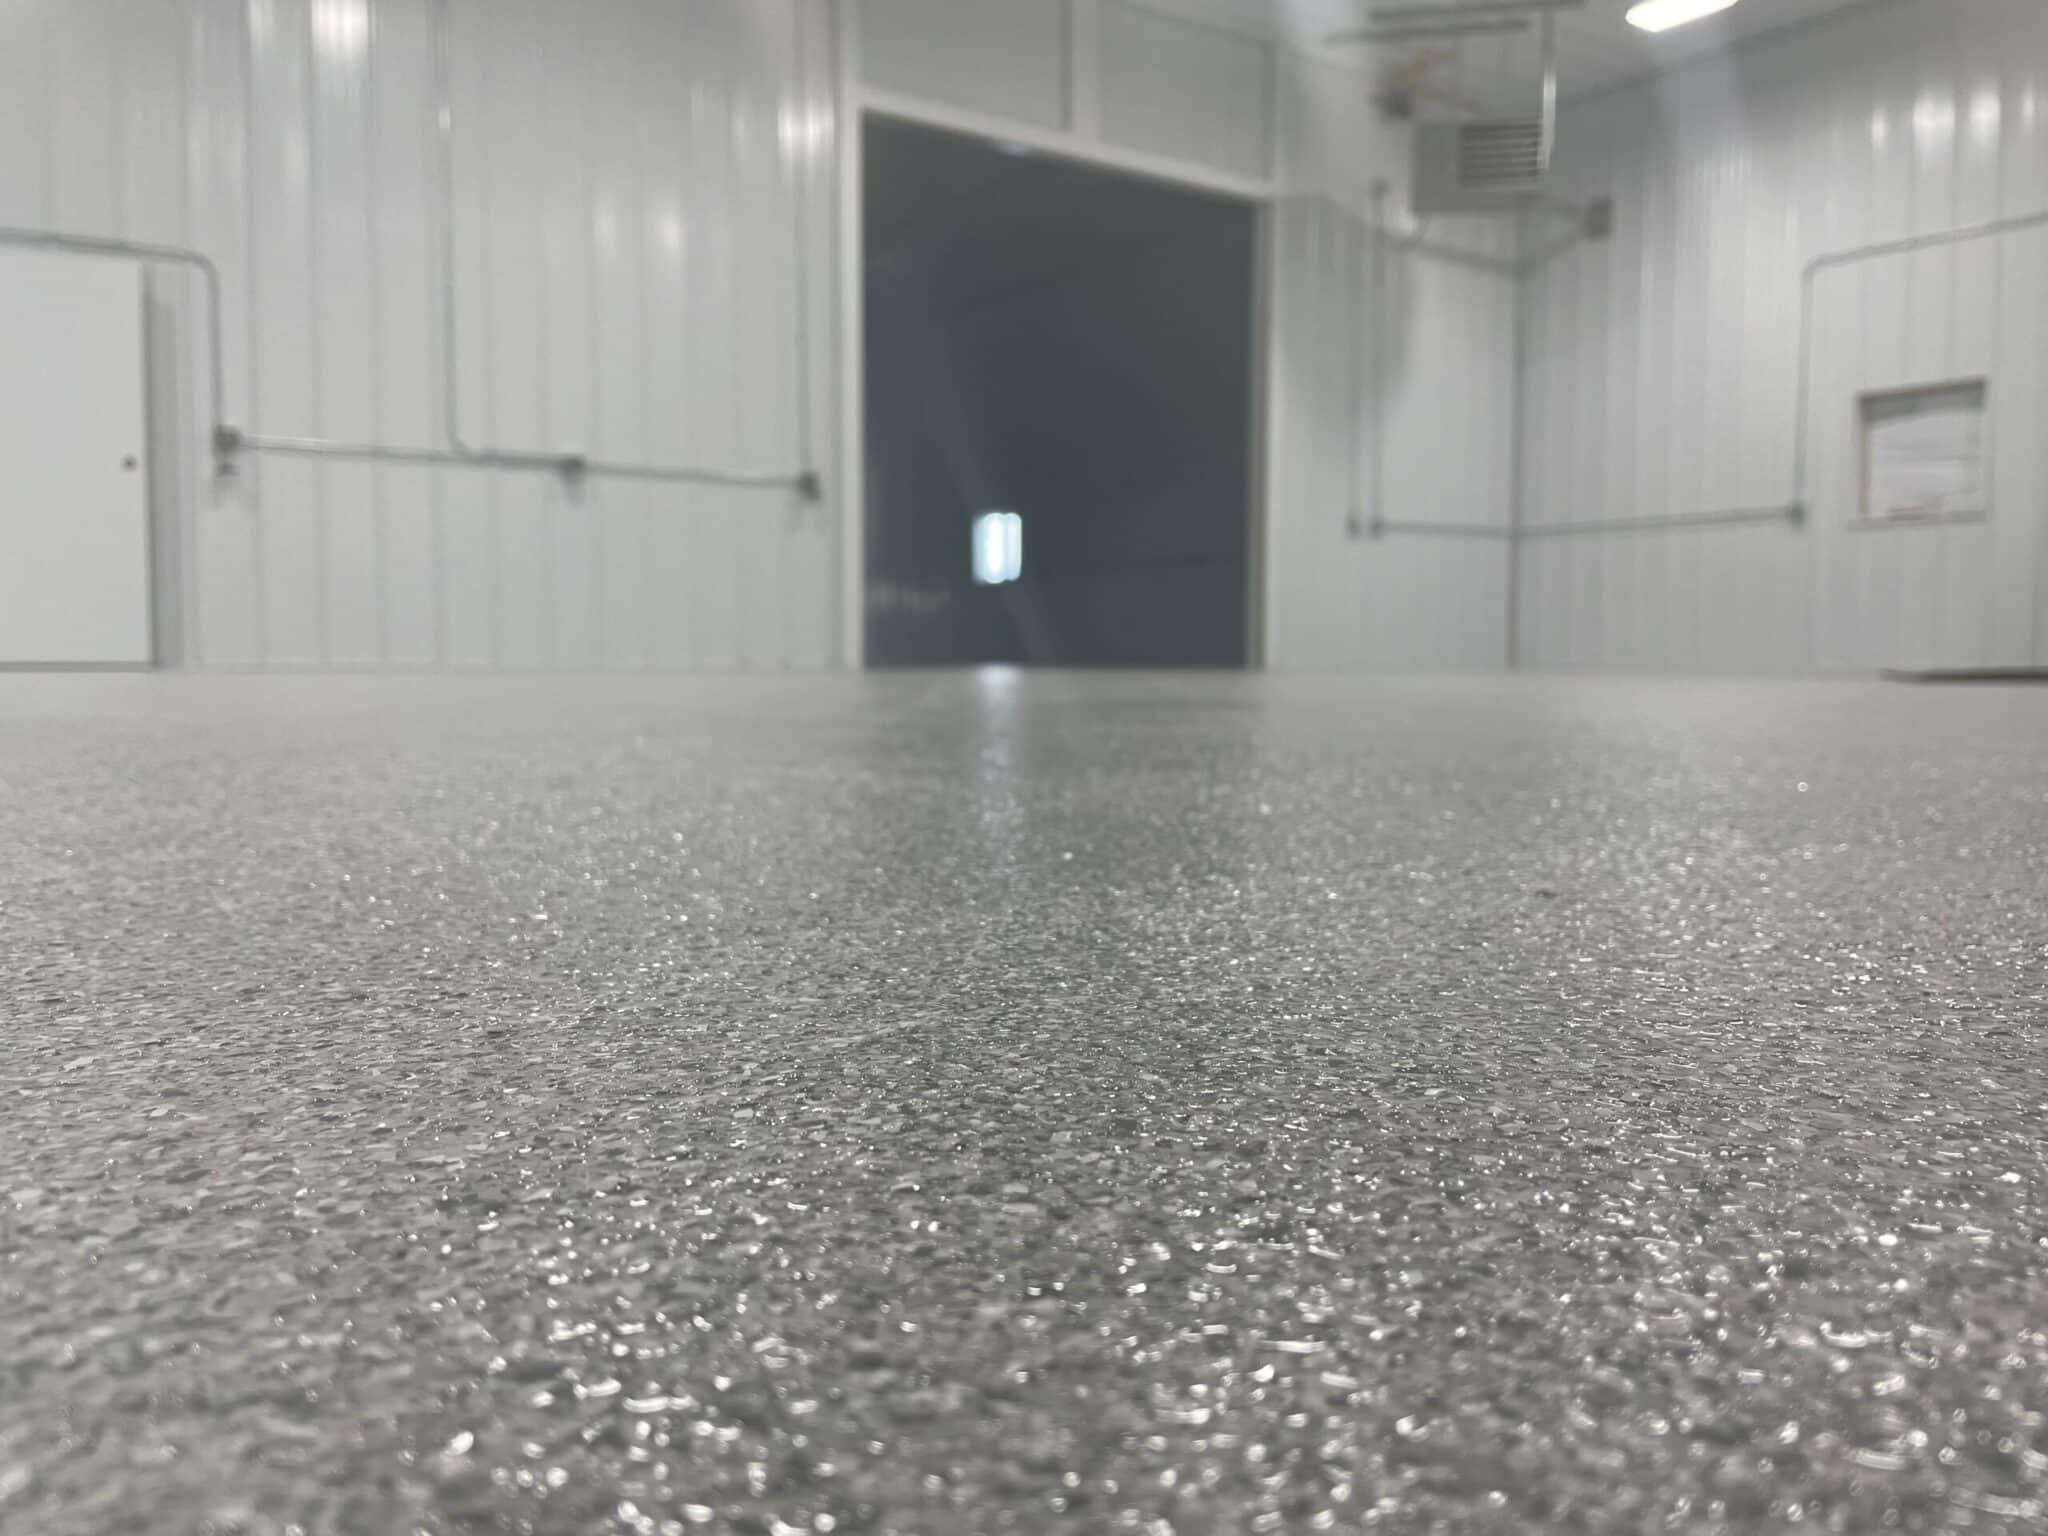 Panel shop floor